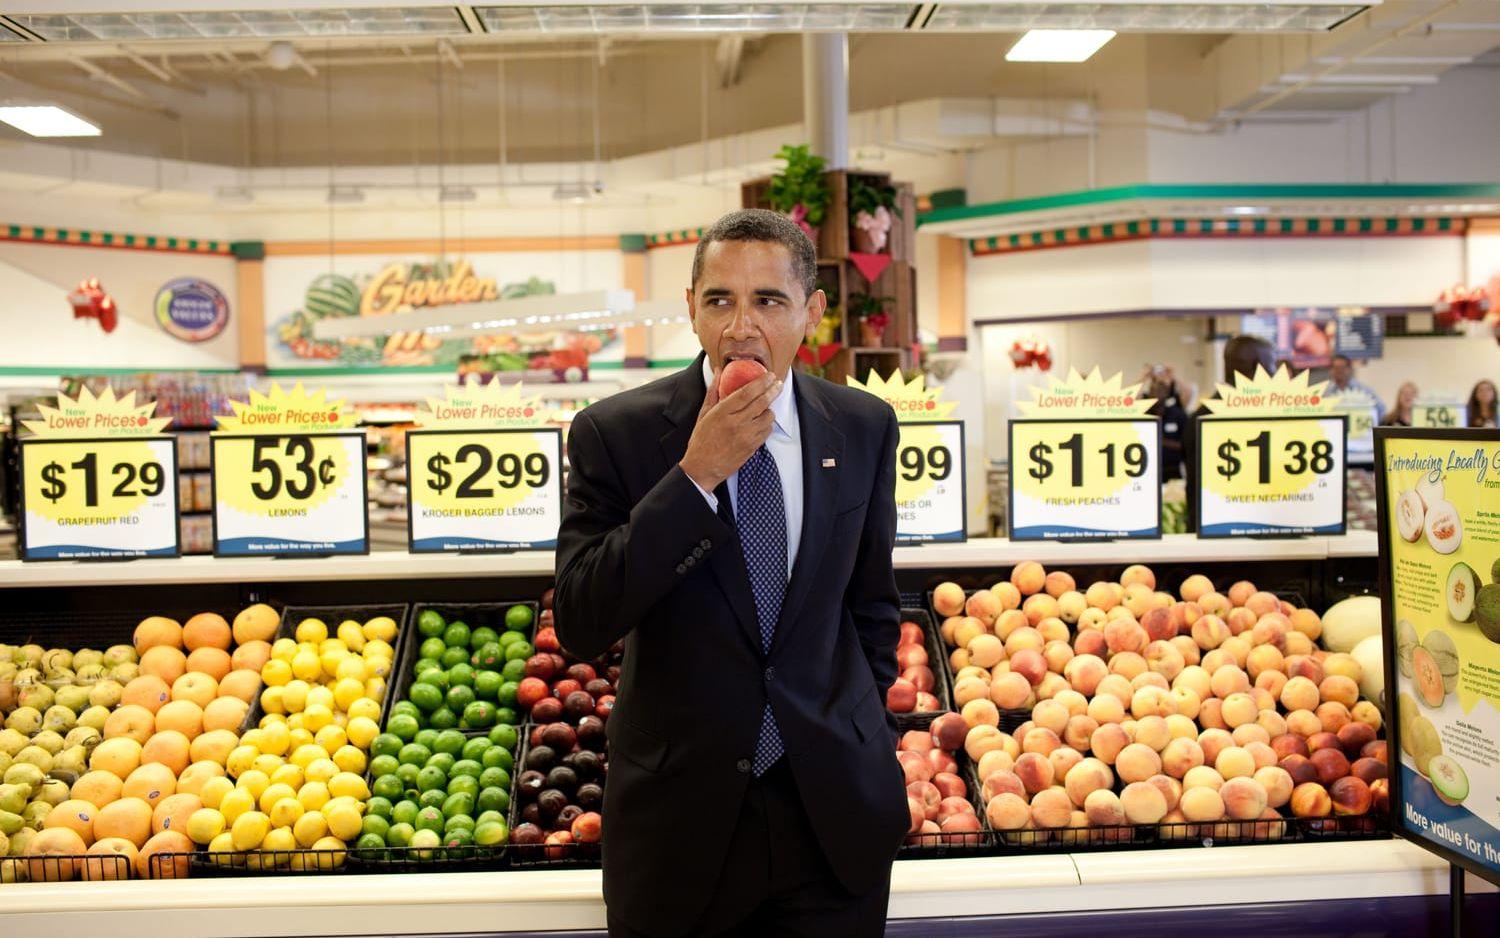 29 juli, 2009: Barack Obama mumsar på en persika inne påKroger's Supermarket i Bristol Virginia. Sekunden senare gav han en dollarsedel till butikskedjans VD. Foto: Pete Souza / Vita Huset